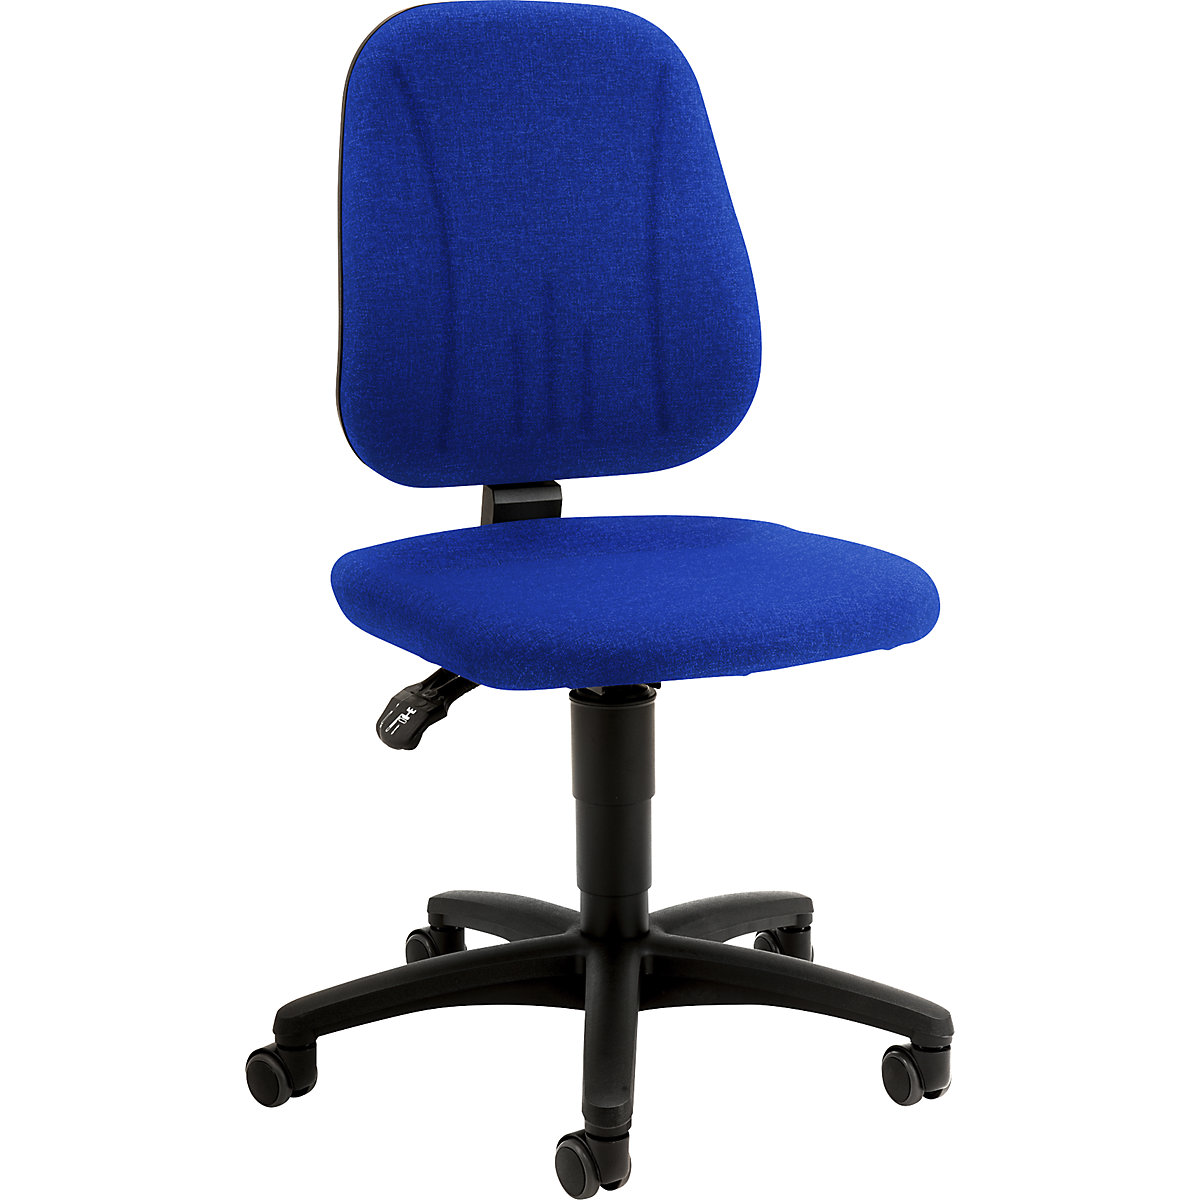 Okretni radni stolac – bimos, s namještanjem visine pomoću plinske opruge, presvlaka od tkanine, u plavoj boji, s kotačima-20